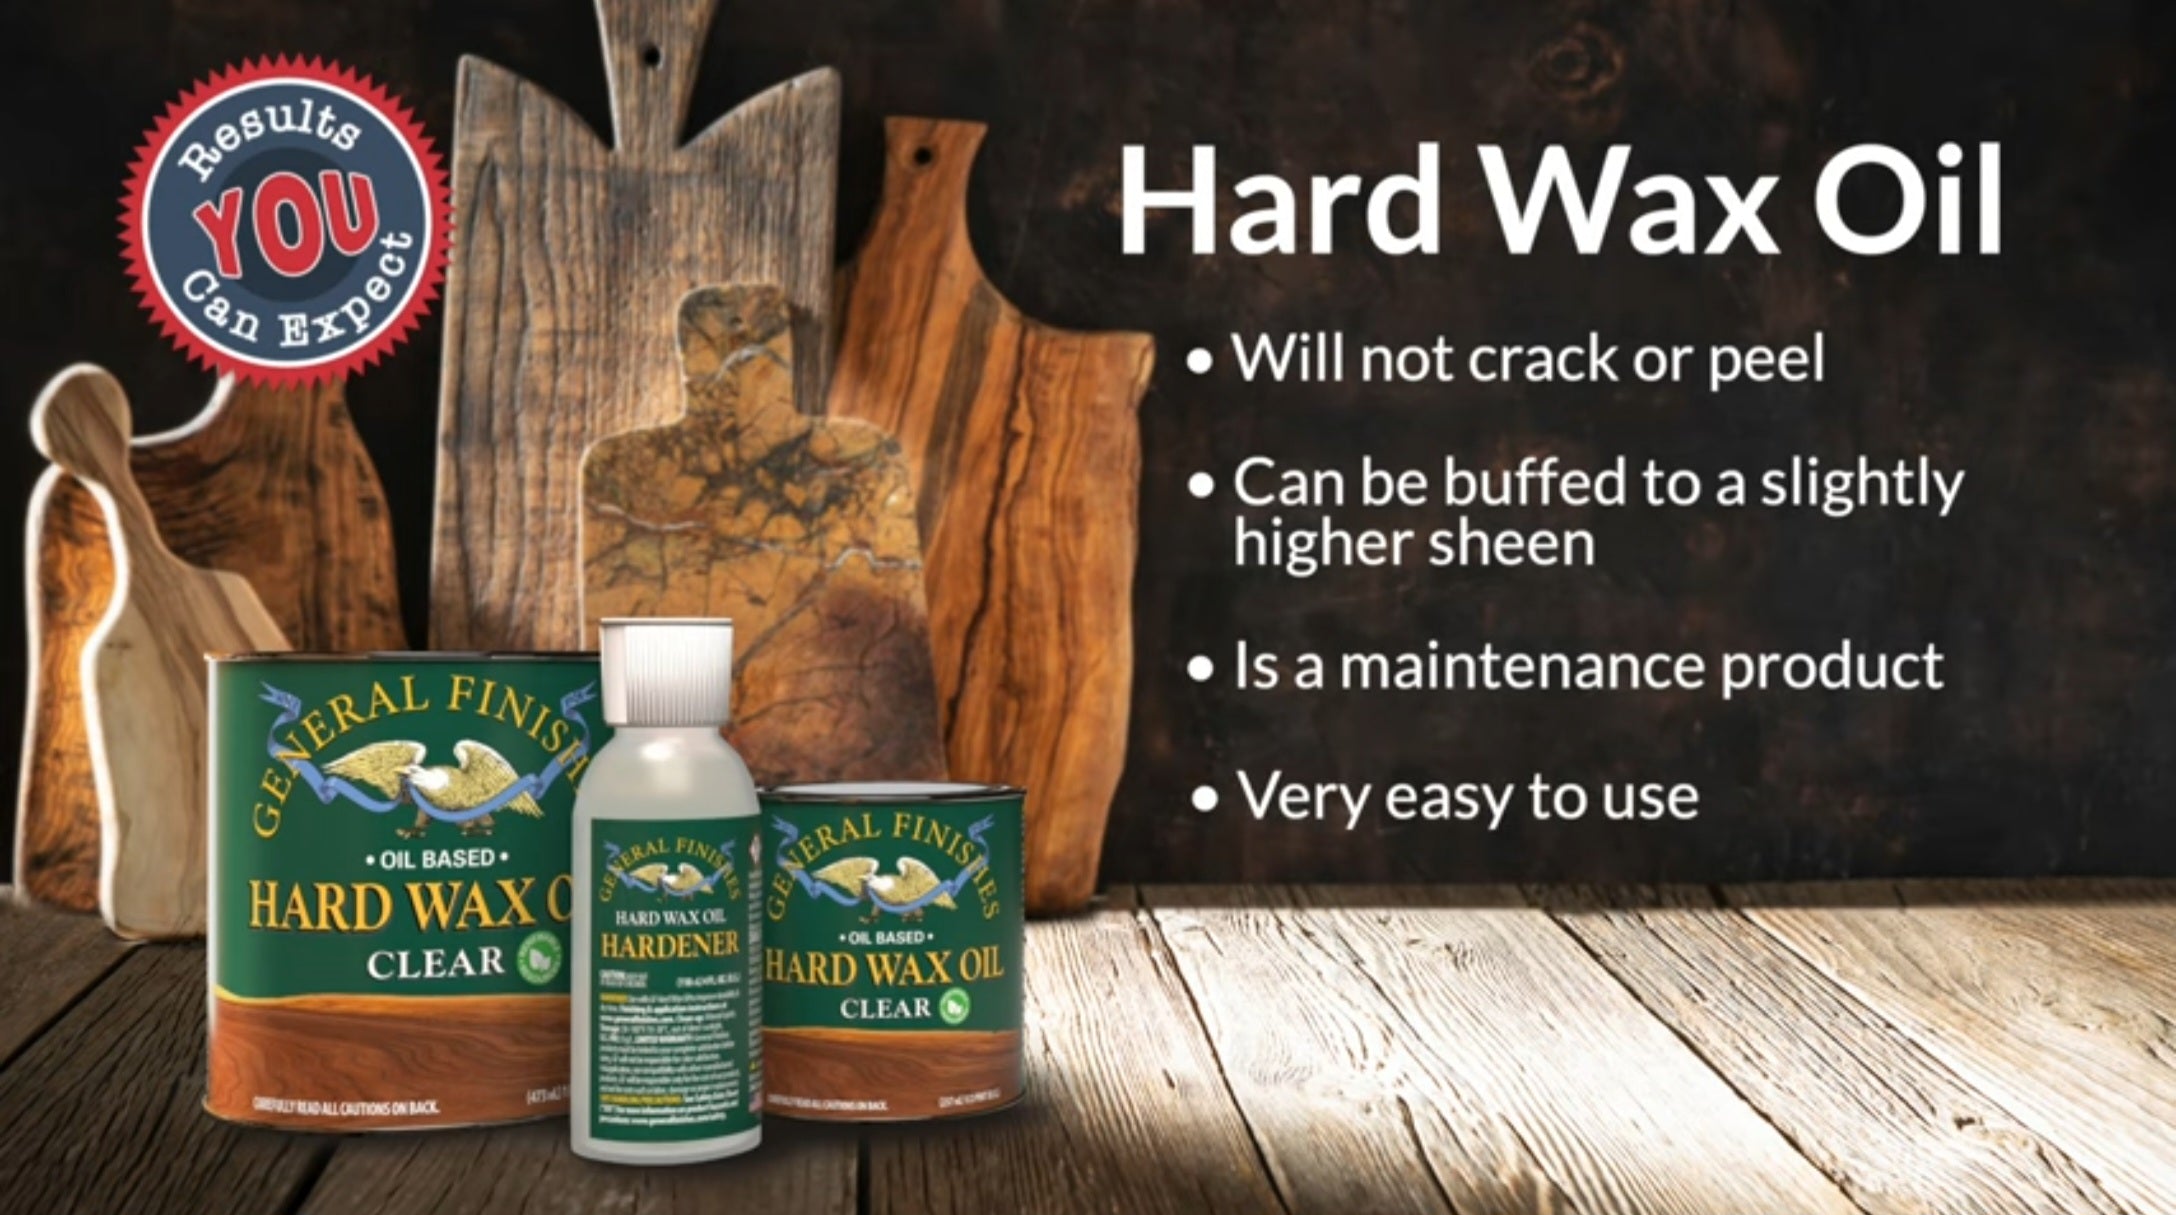 General Finishes Hard Wax Oil Characteristics